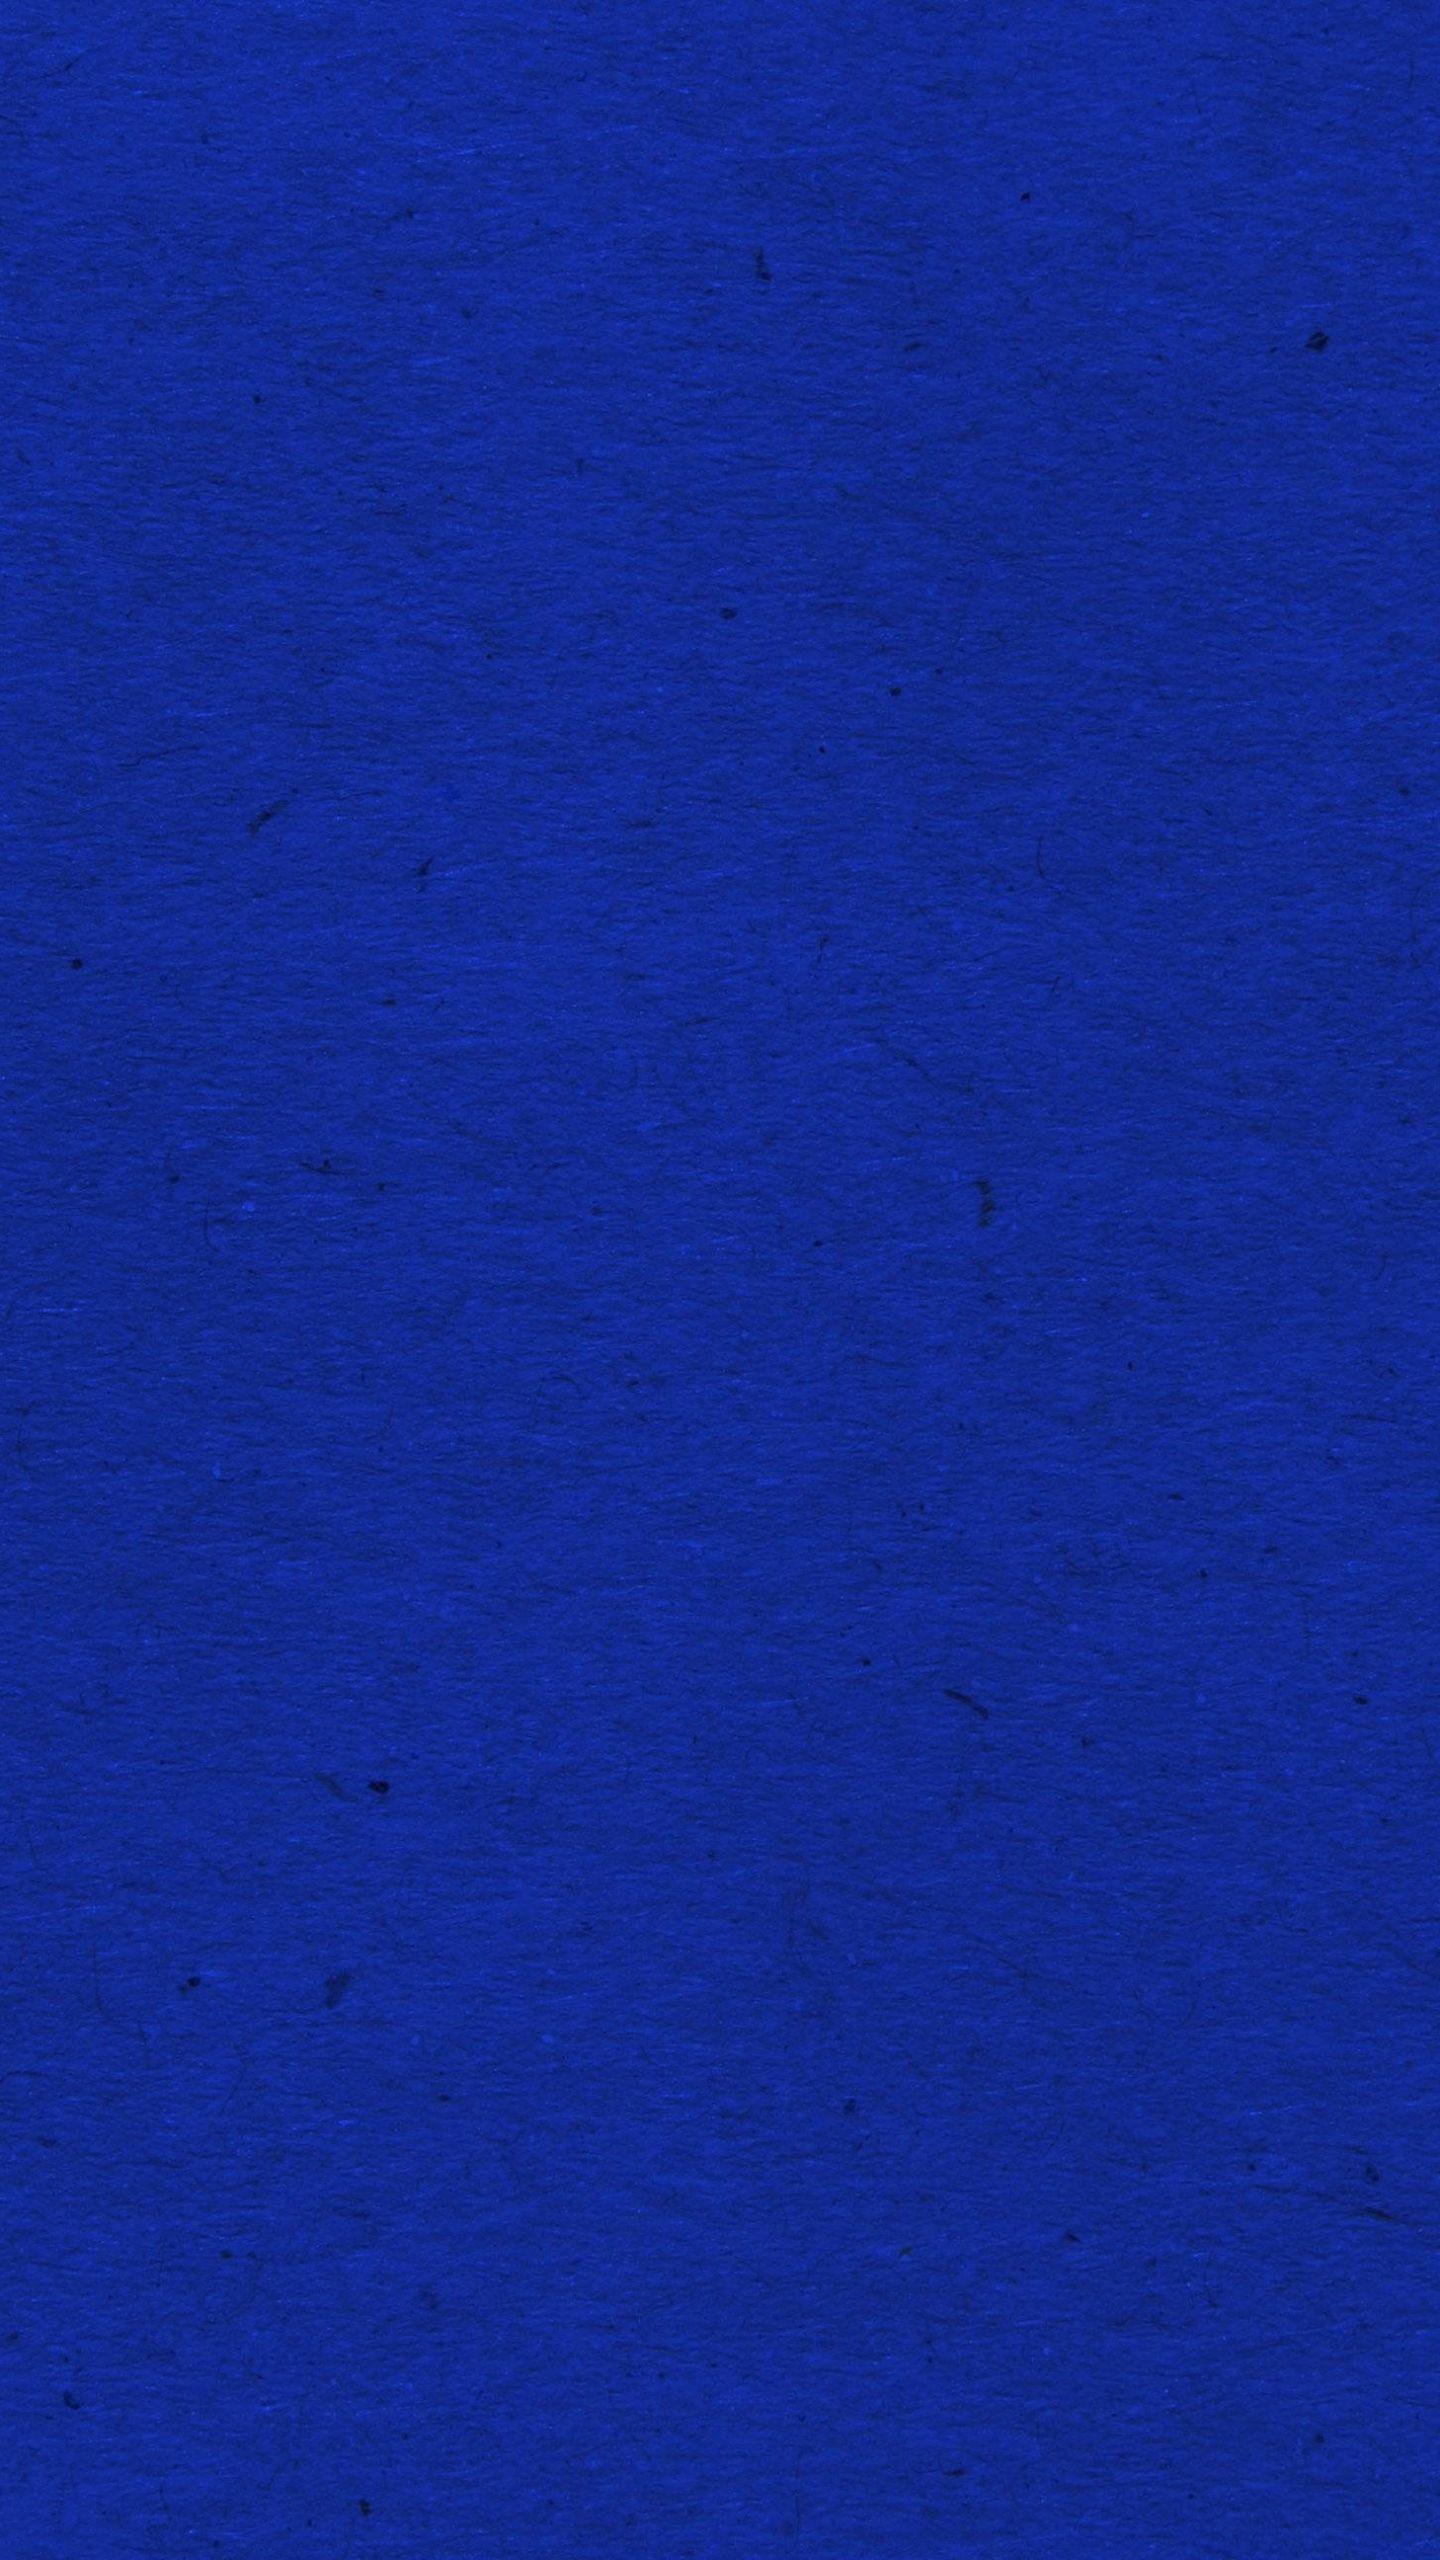 Royal Blue Texture: Hãy chiêm ngưỡng sự trang nhã và sang trọng của màu xanh Royal Blue trong hình ảnh này. Chất liệu vải bề mặt lớn và tinh tế đem đến cho bạn một trải nghiệm hấp dẫn và tuyệt vời.